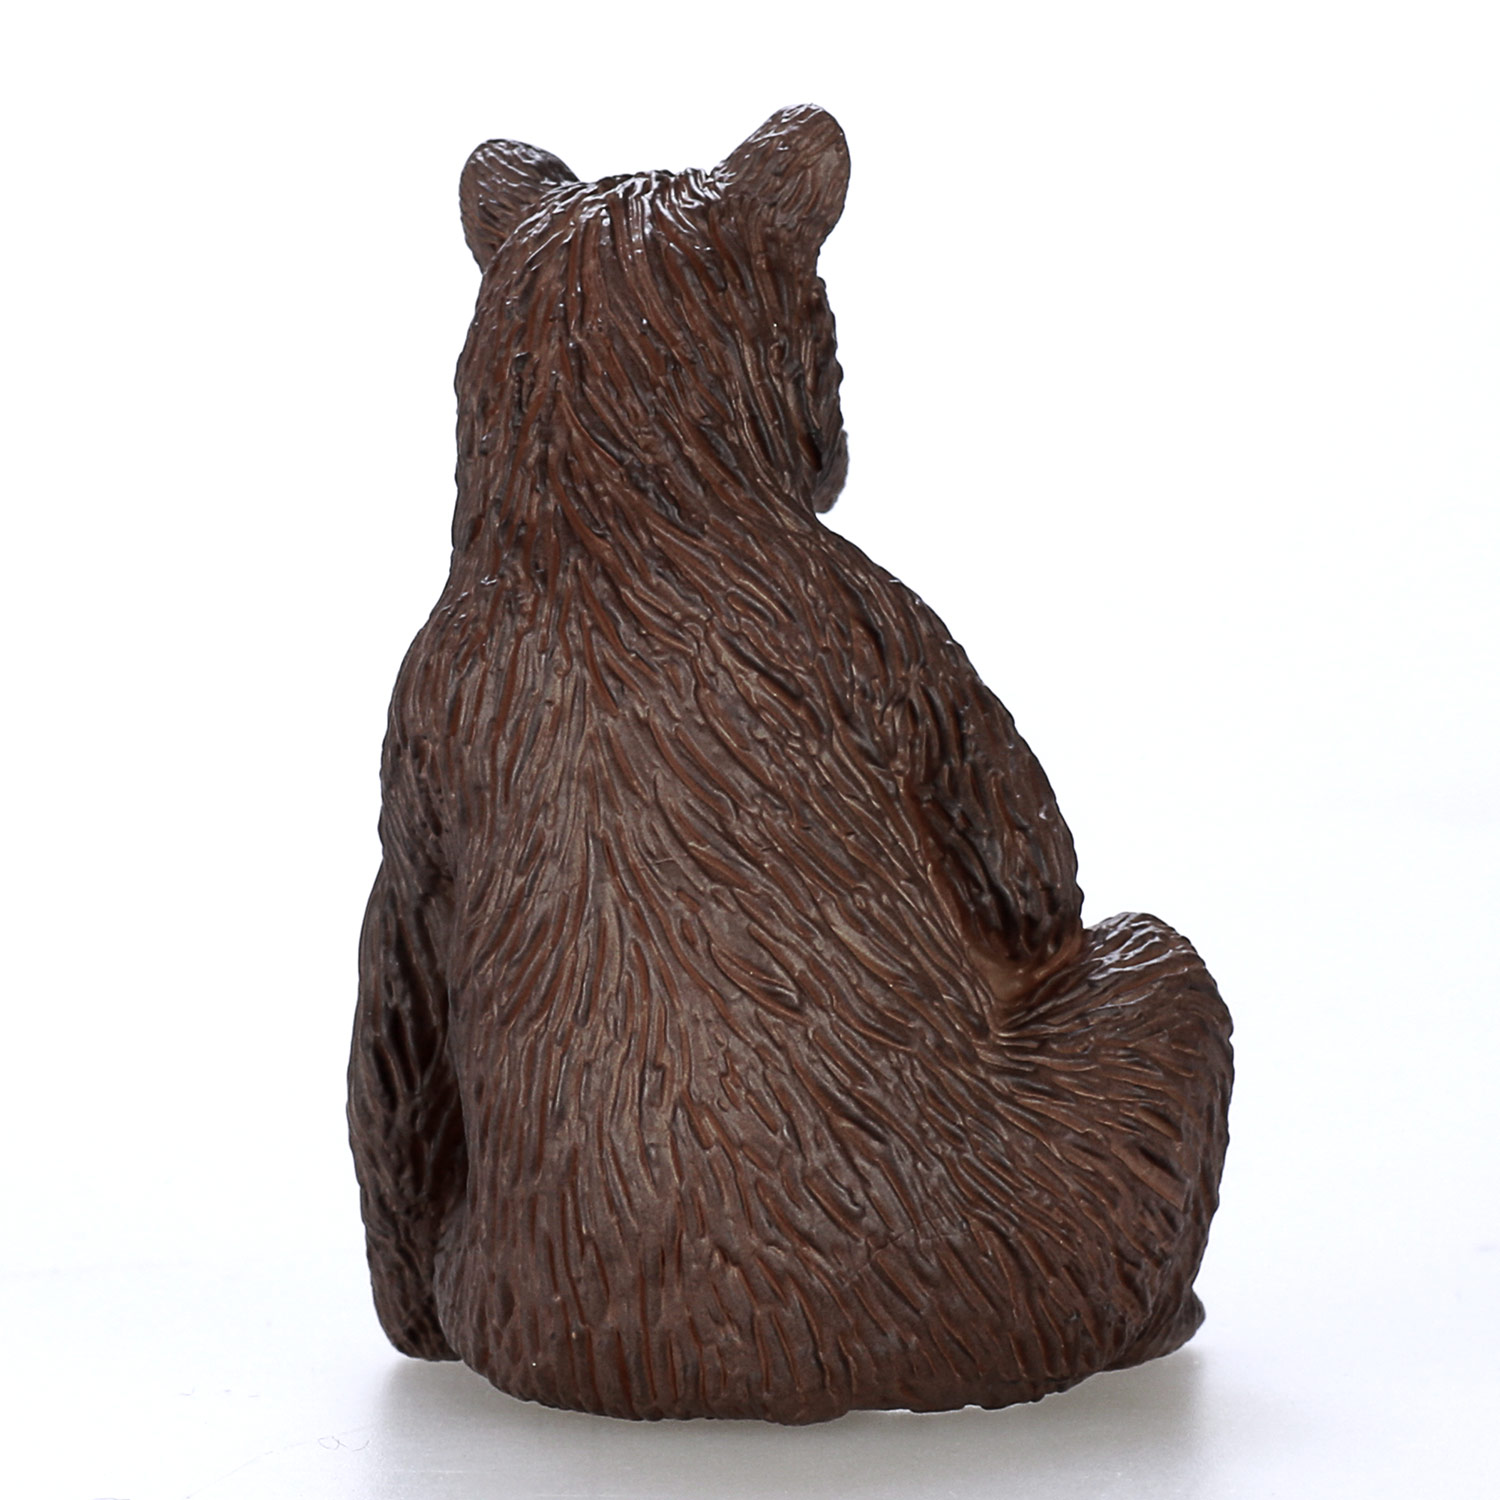 Mojo Wildlife Grizzly Bear Cub - 387217